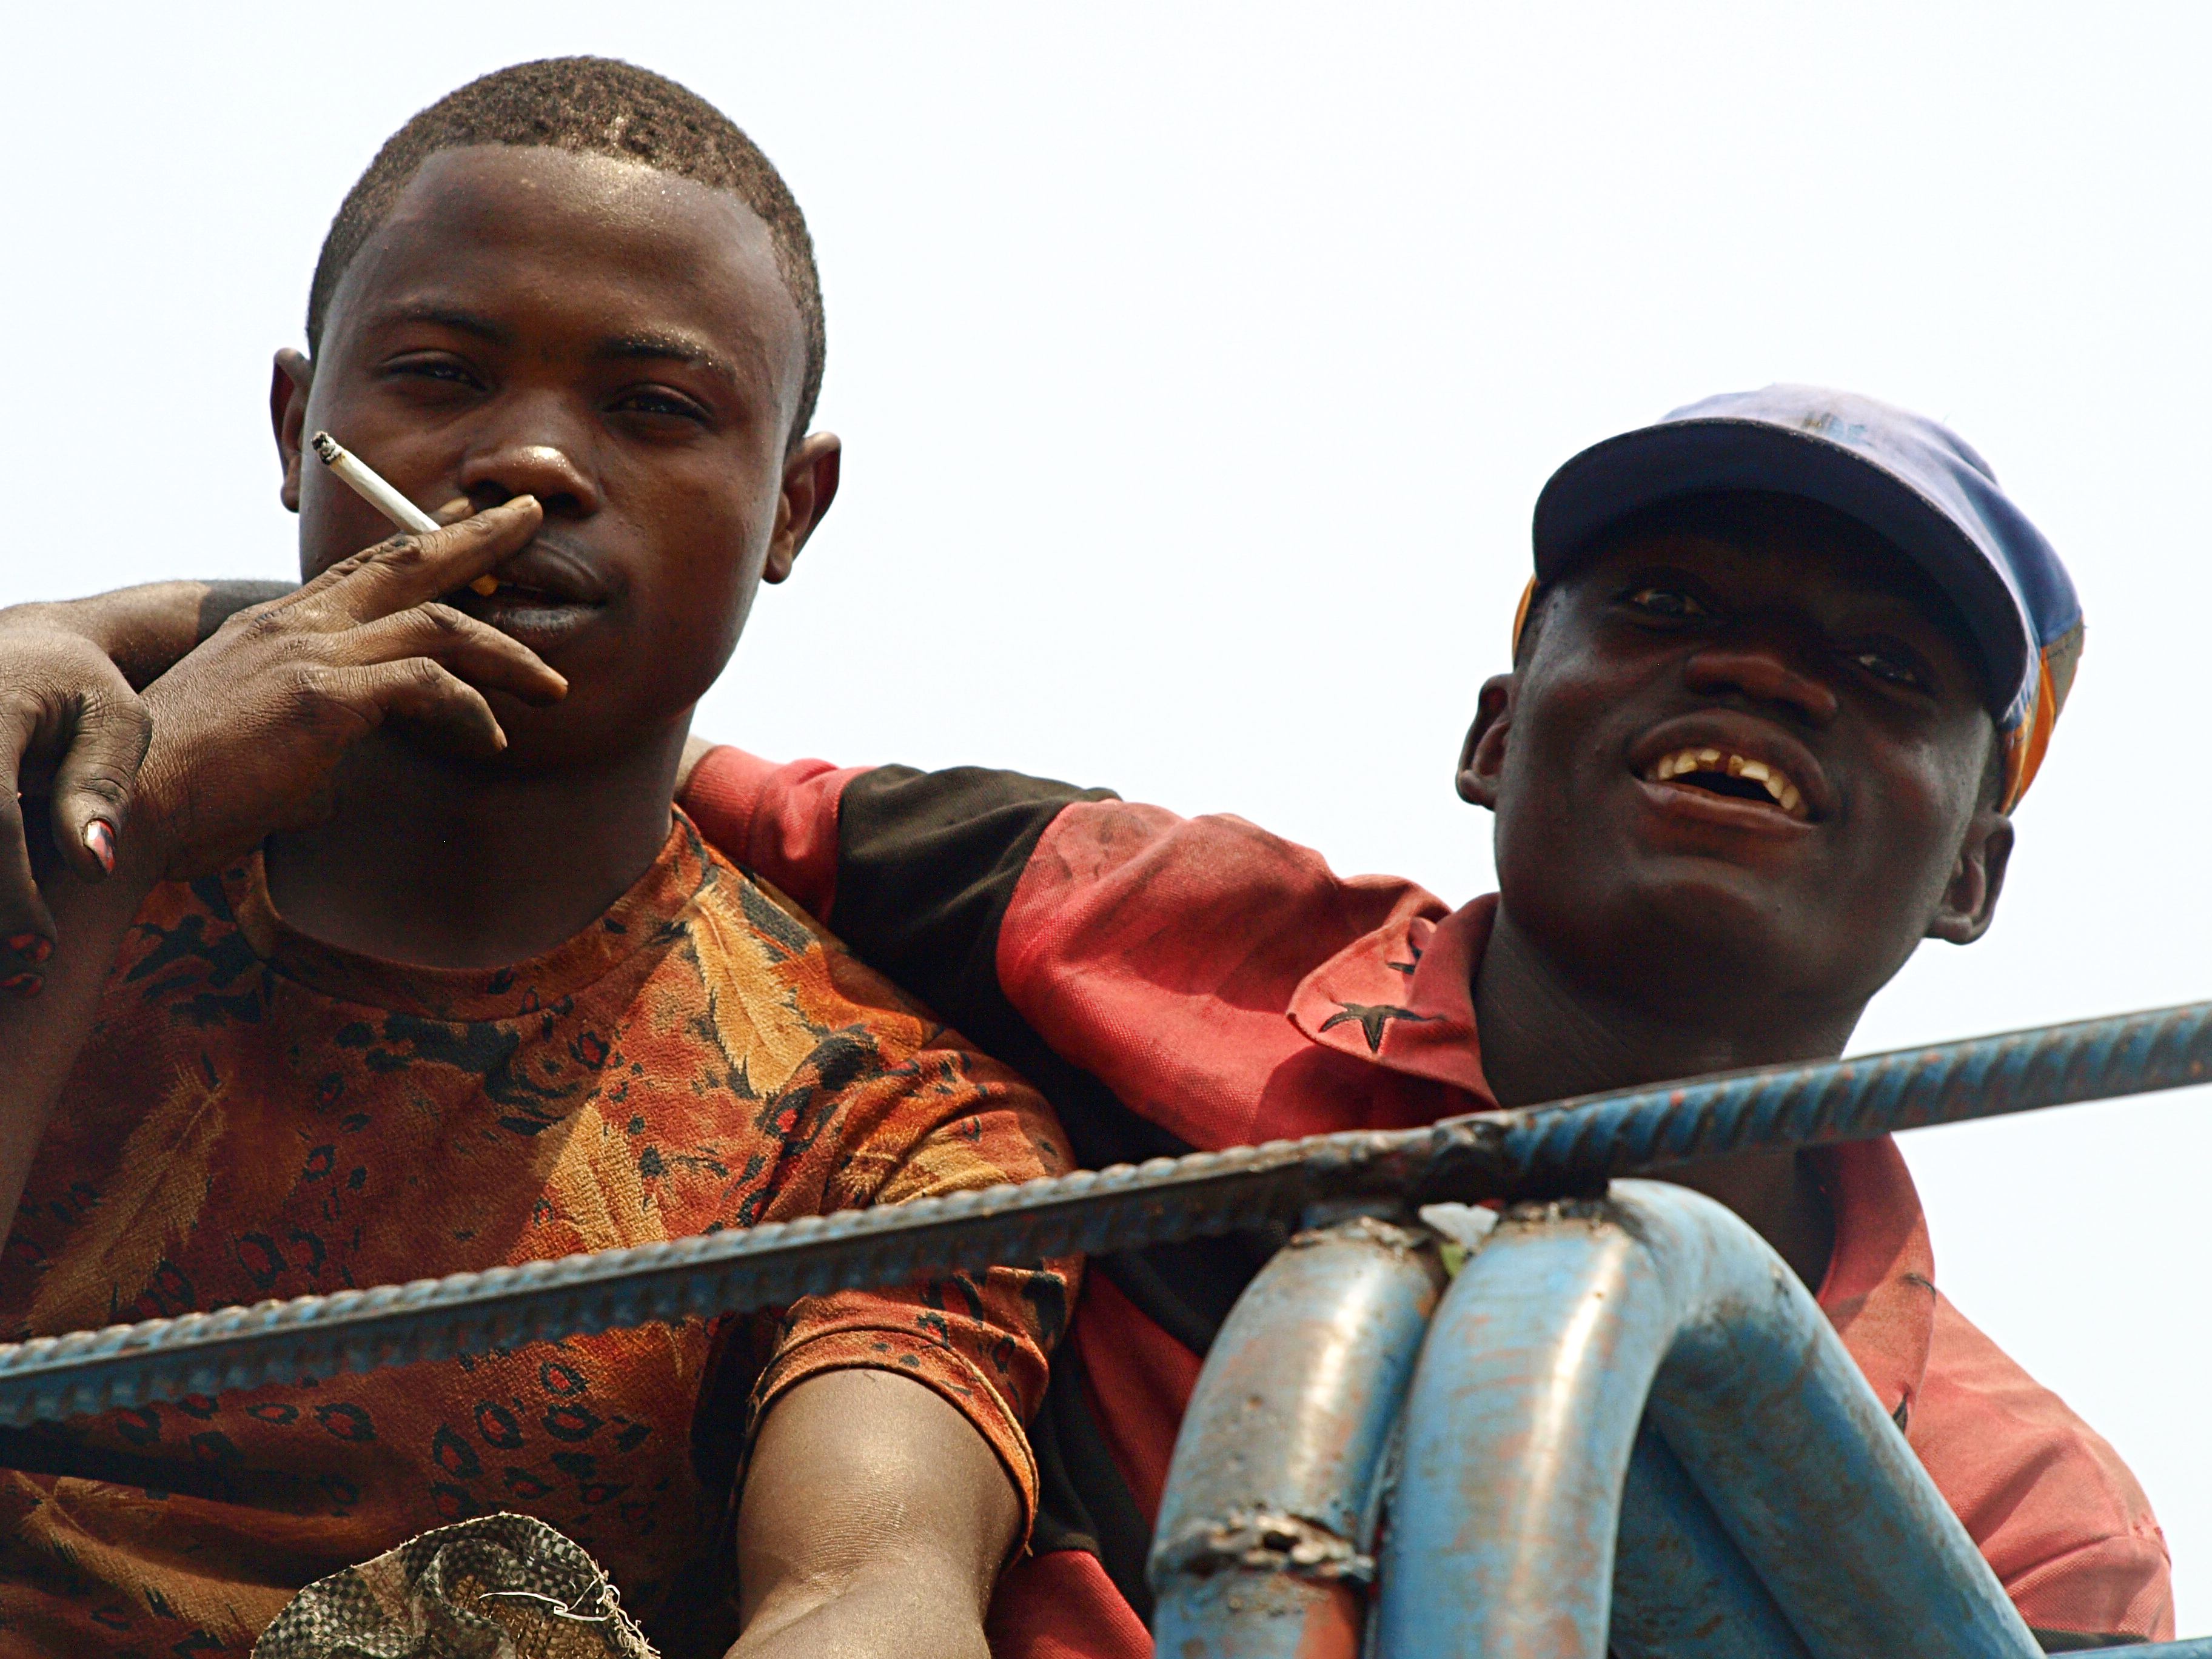 Viajando por el Congo Kinshasa (1 parte)